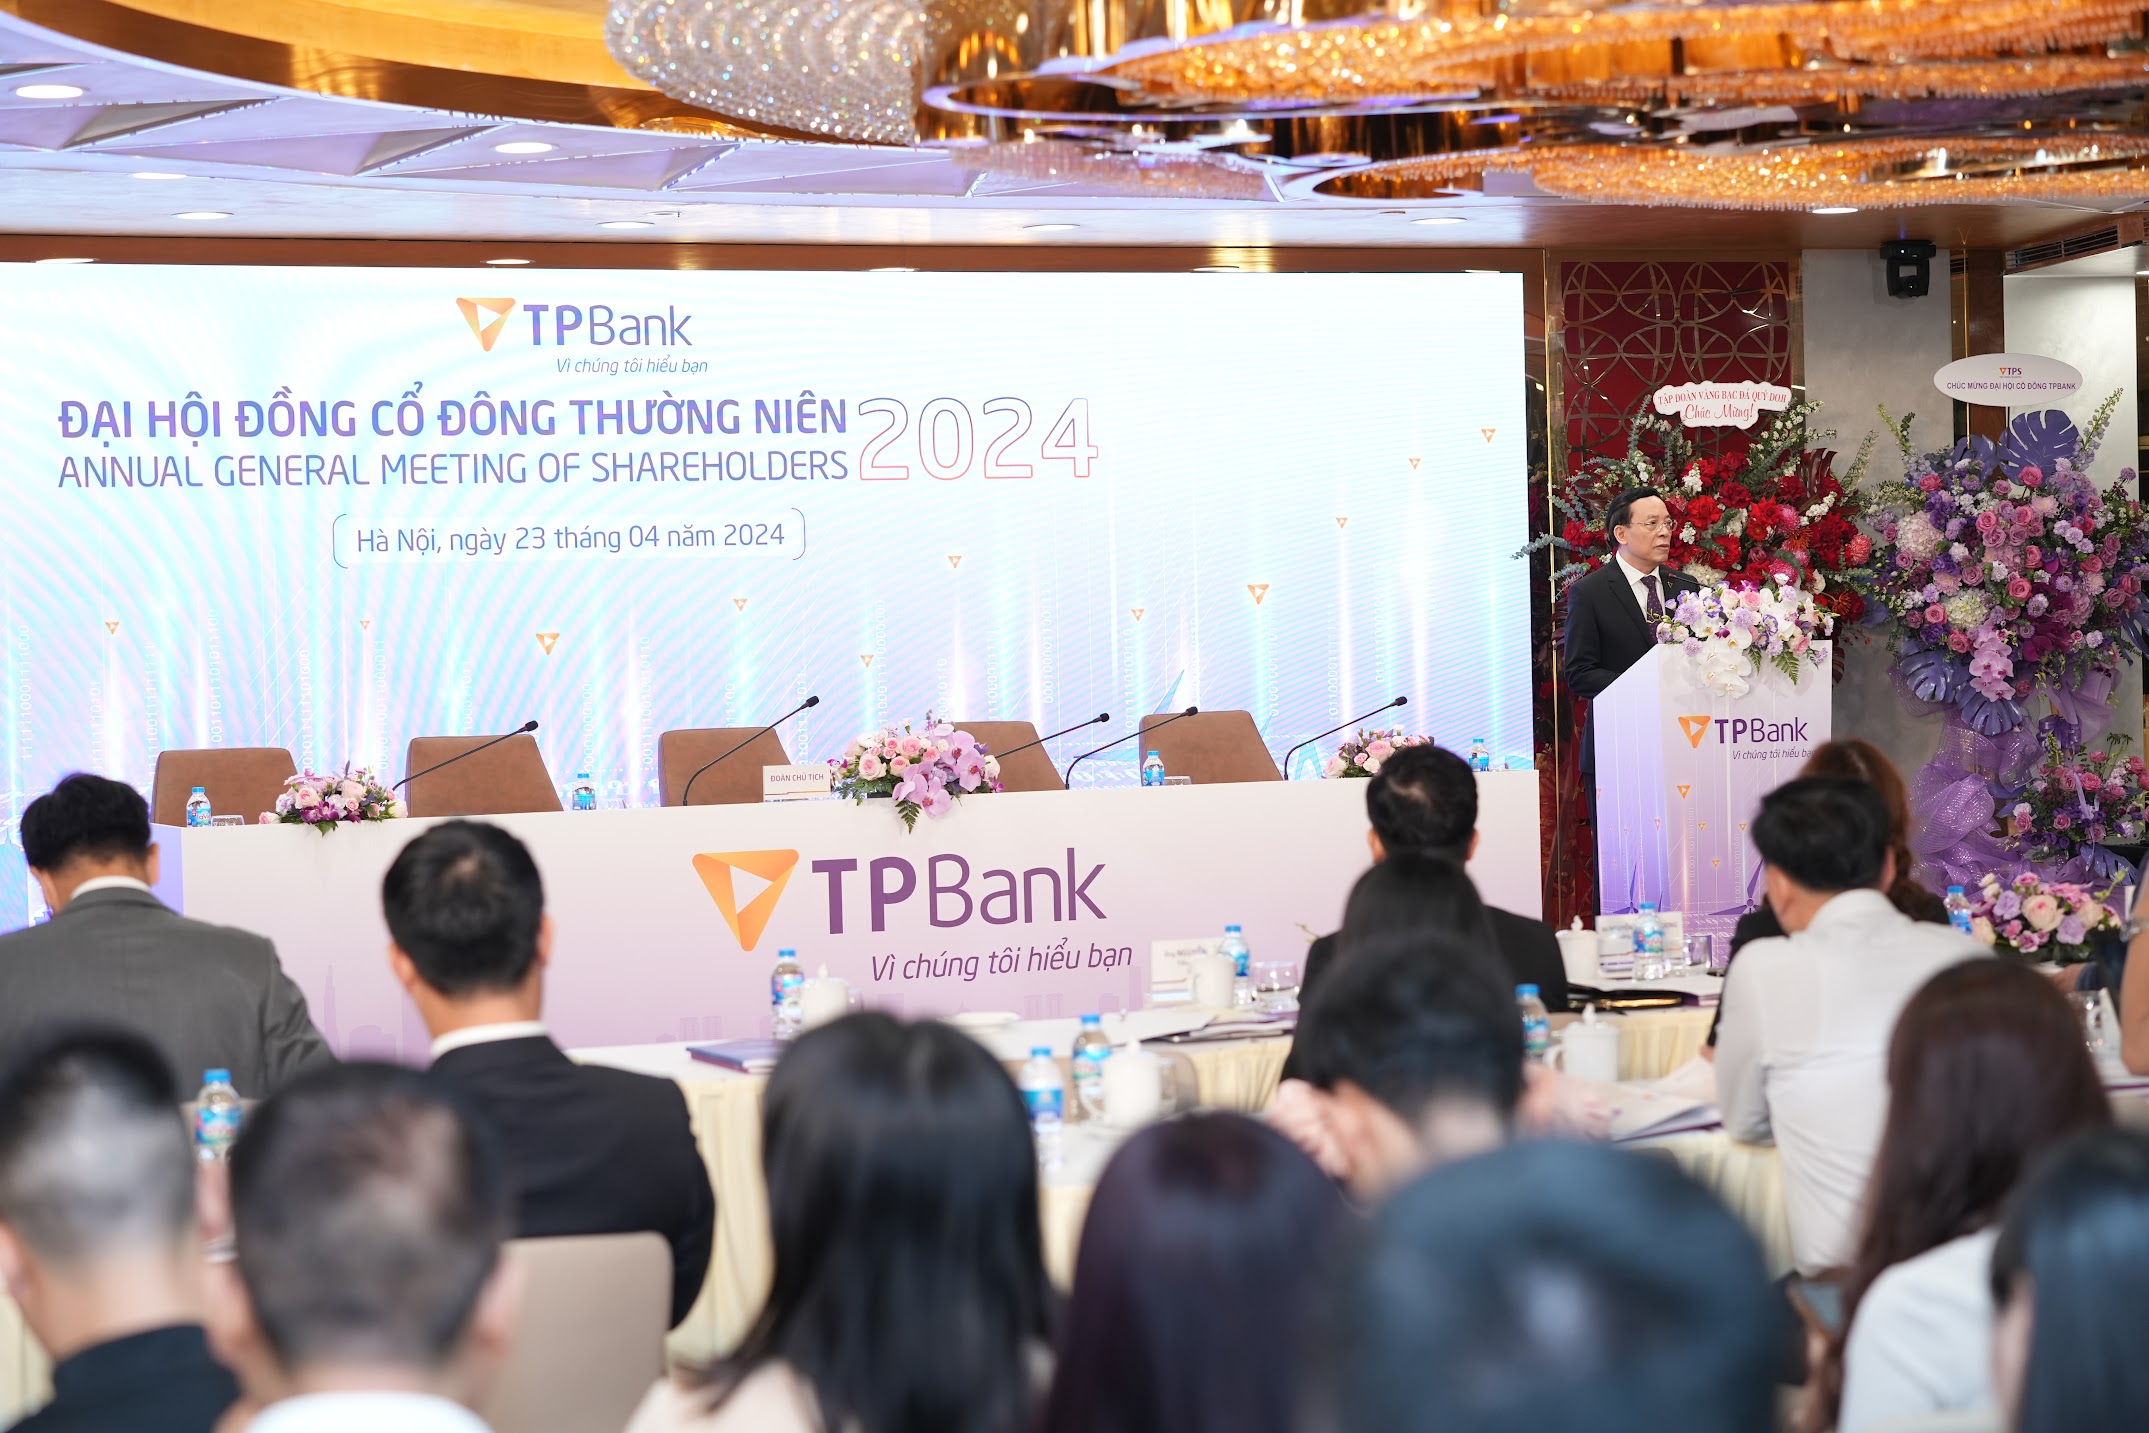 TPBank bất ngờ công bố kế hoạch chia cổ tức 25% bằng tiền và cổ phiếu tại Đại hội cổ đông- Ảnh 2.